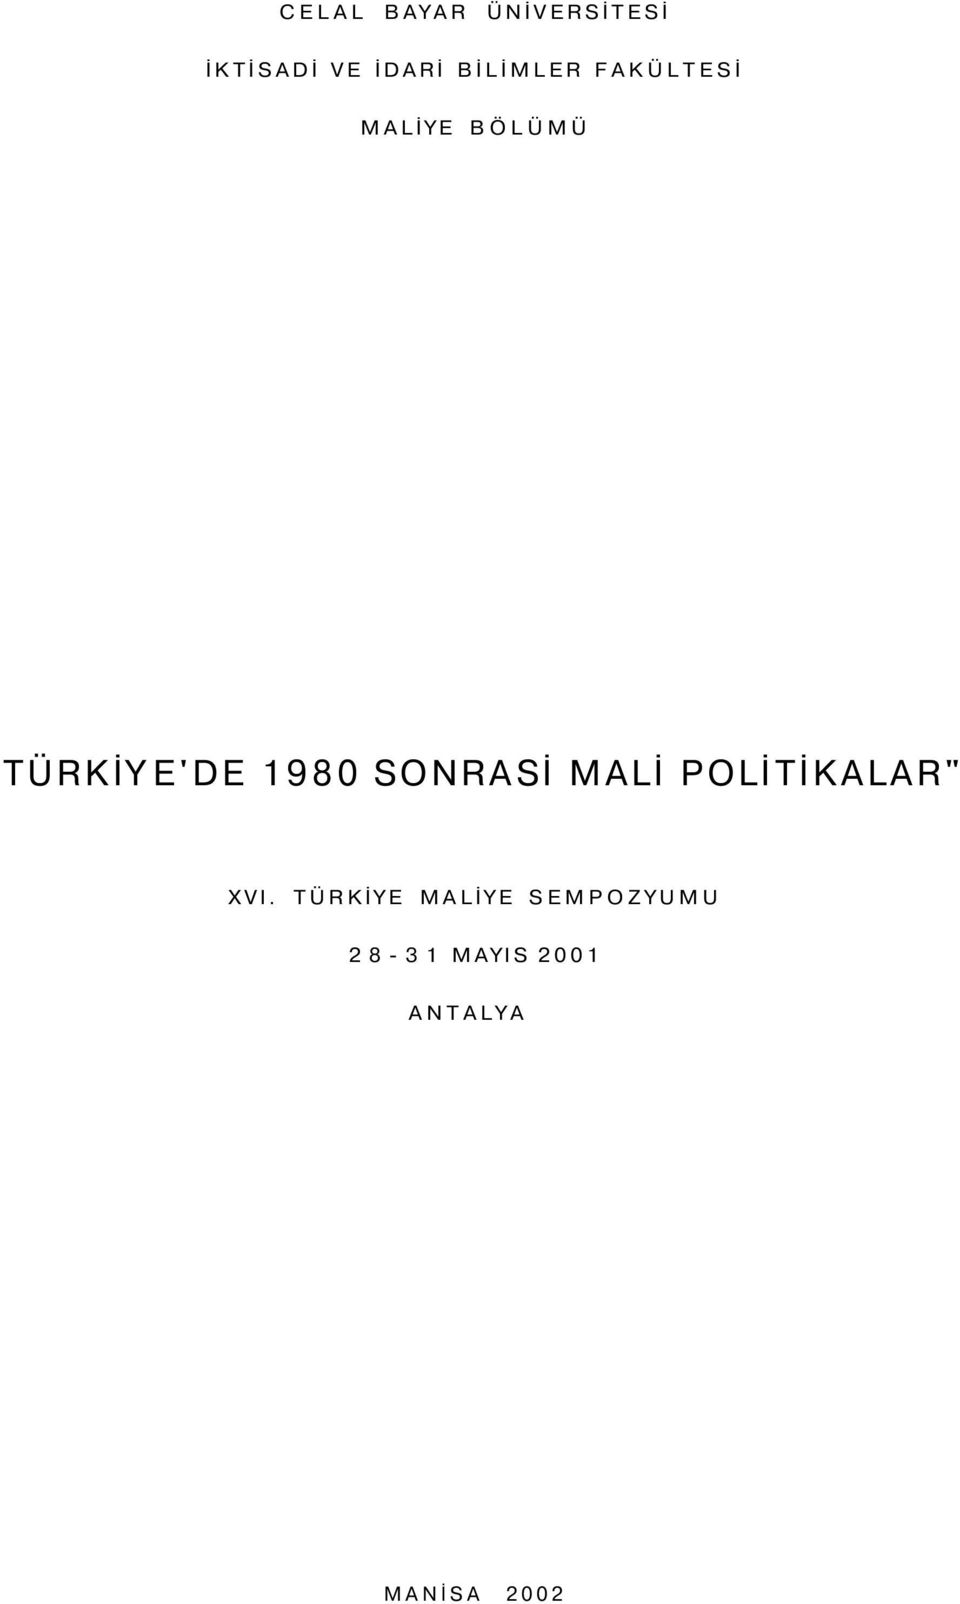 1980 SONRASİ MALİ POLİTİKALAR" XVI.